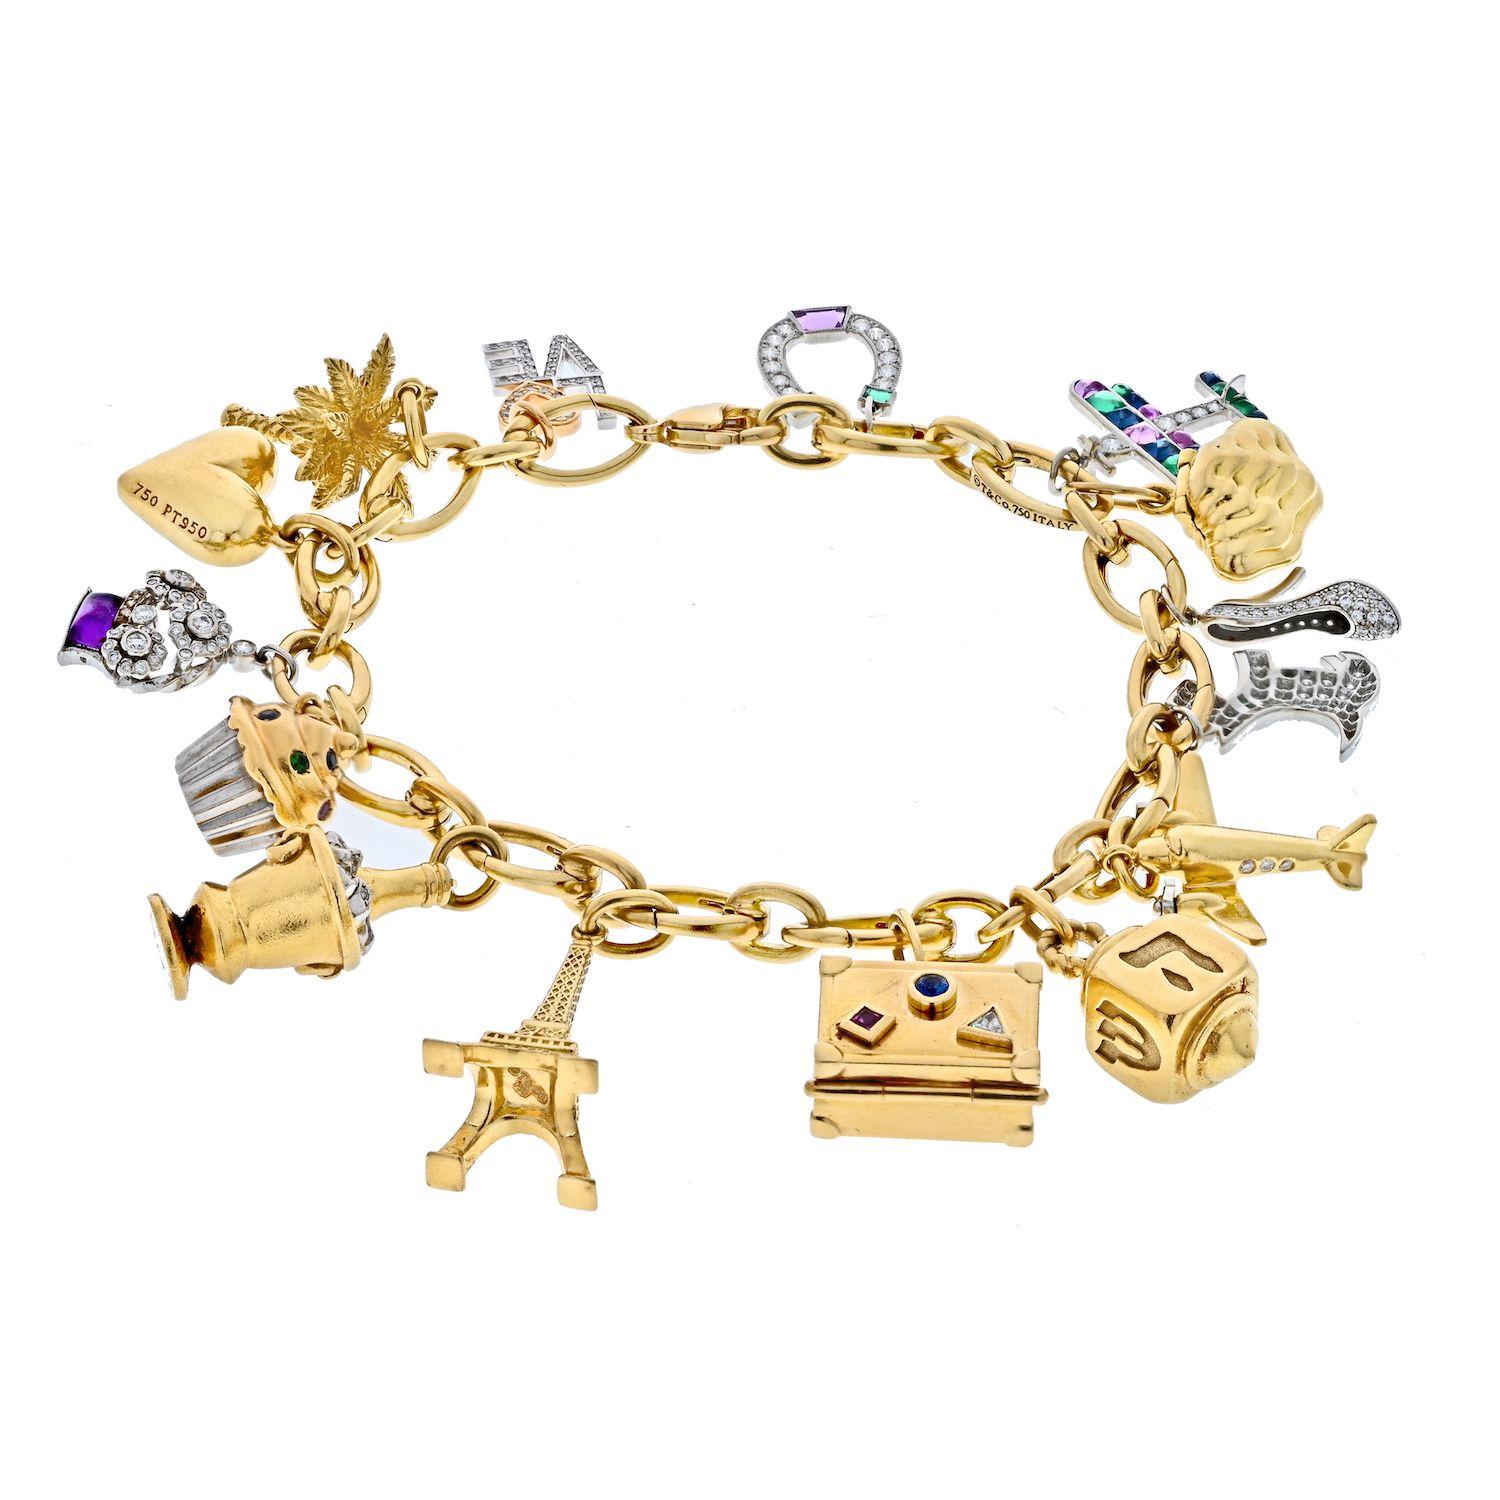 Tiffany & Co. Platin & 18K Gelbgold Gemset und Diamant-Charme-Armband.

An dem goldenen Gliederarmband hängen 15 Charms, darunter eine Palme, ein mit runden Diamanten besetzter Sektkübel, ein Flugzeug, ein mit runden Diamanten besetzter Schuh, ein